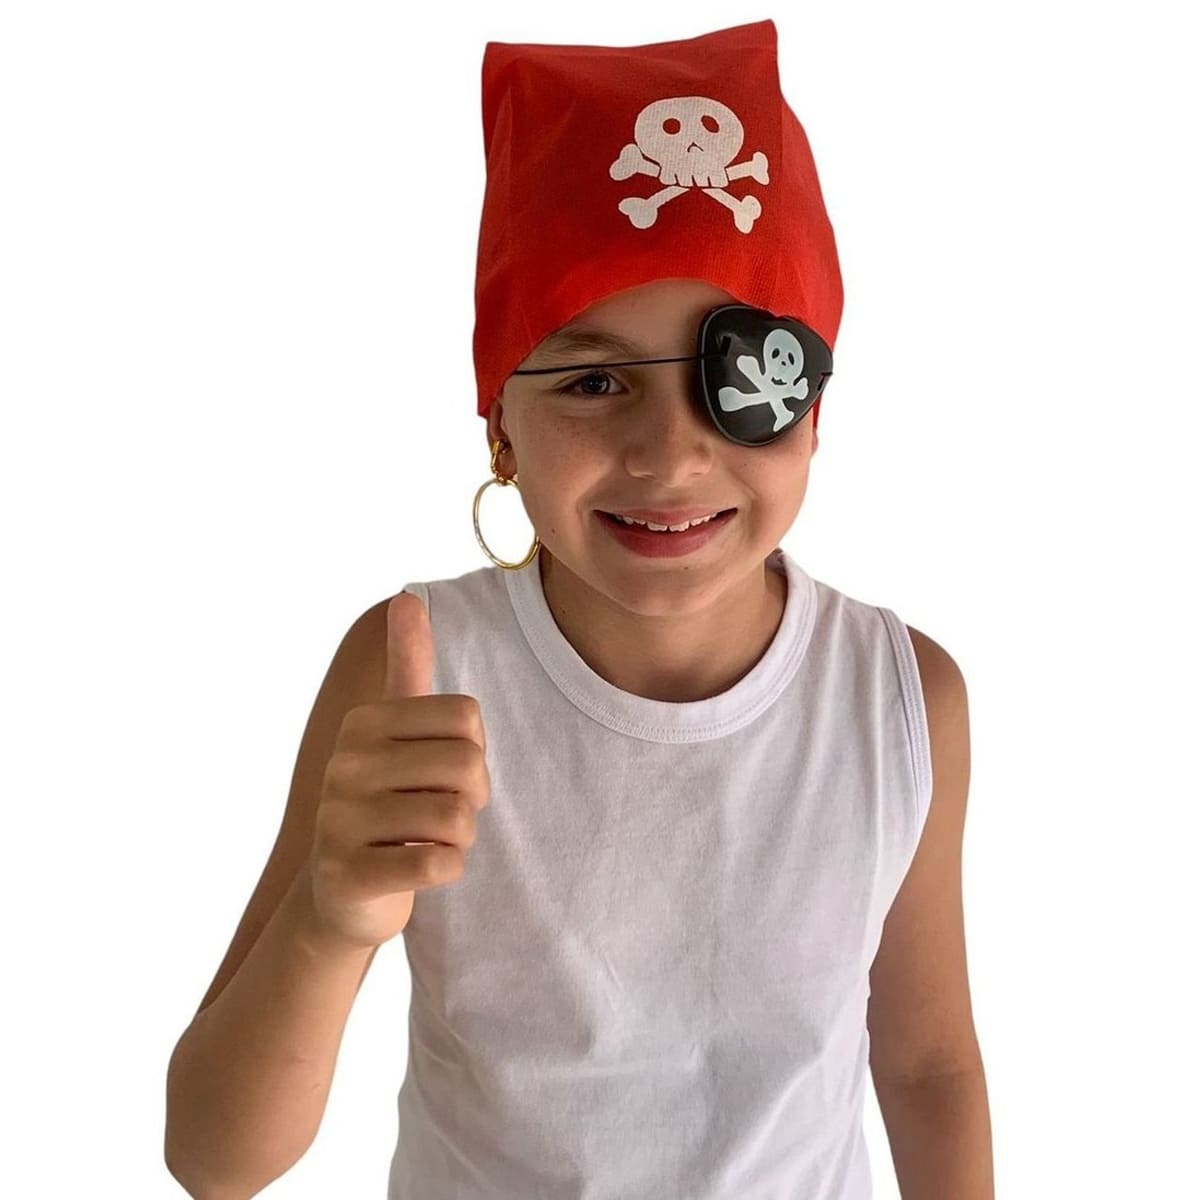 Como fazer fantasia de pirata pra criança - dicas 